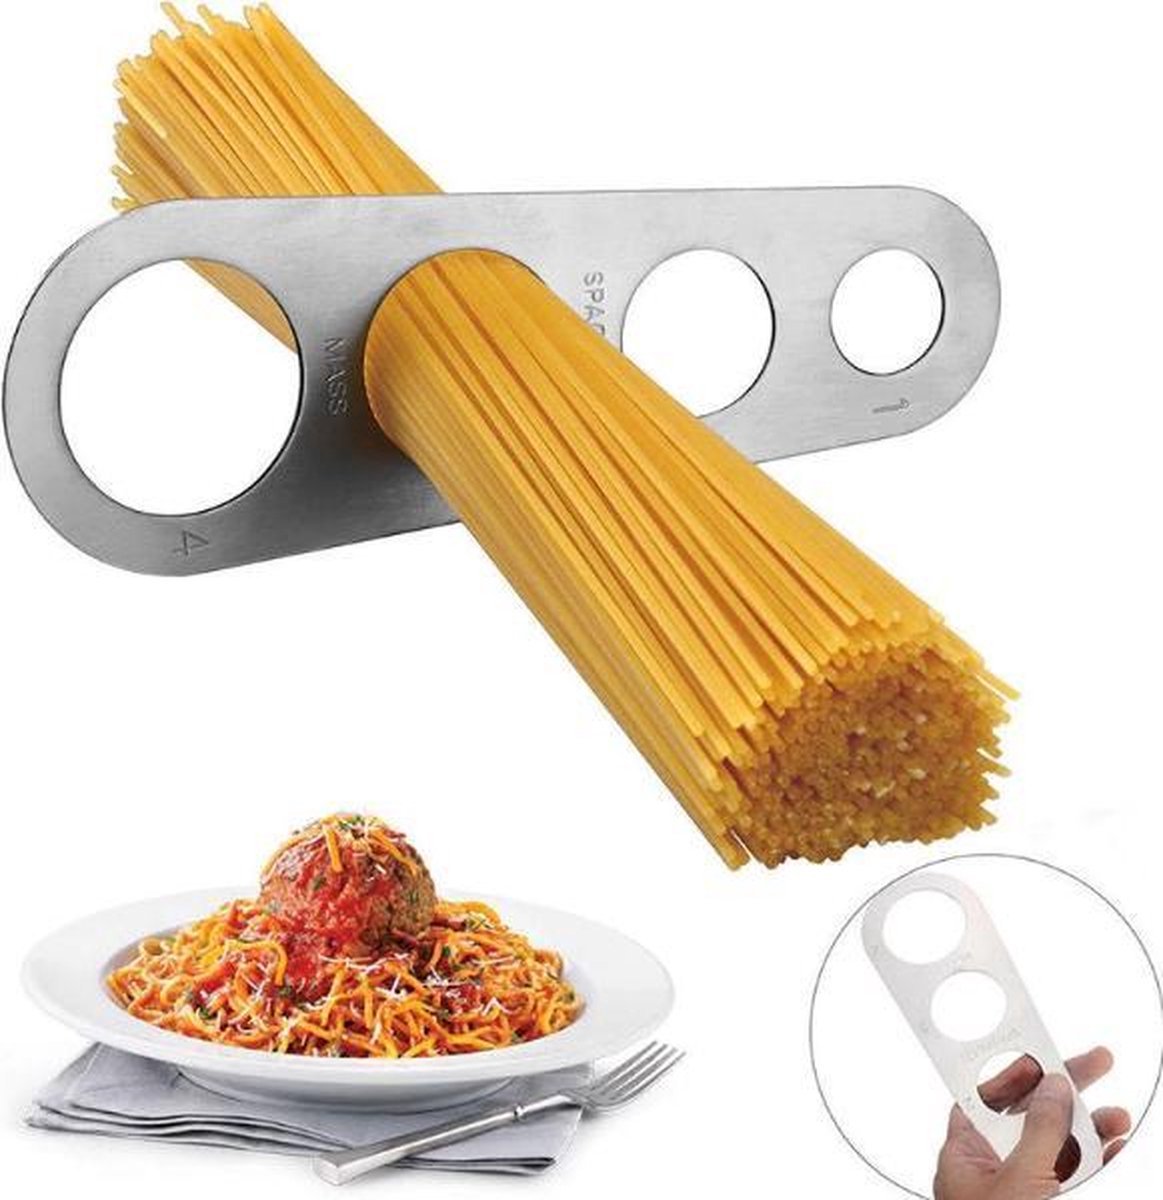 New Age Devi - Spaghettimaat: Spaghetti- Portie- Meter - New Age Devi